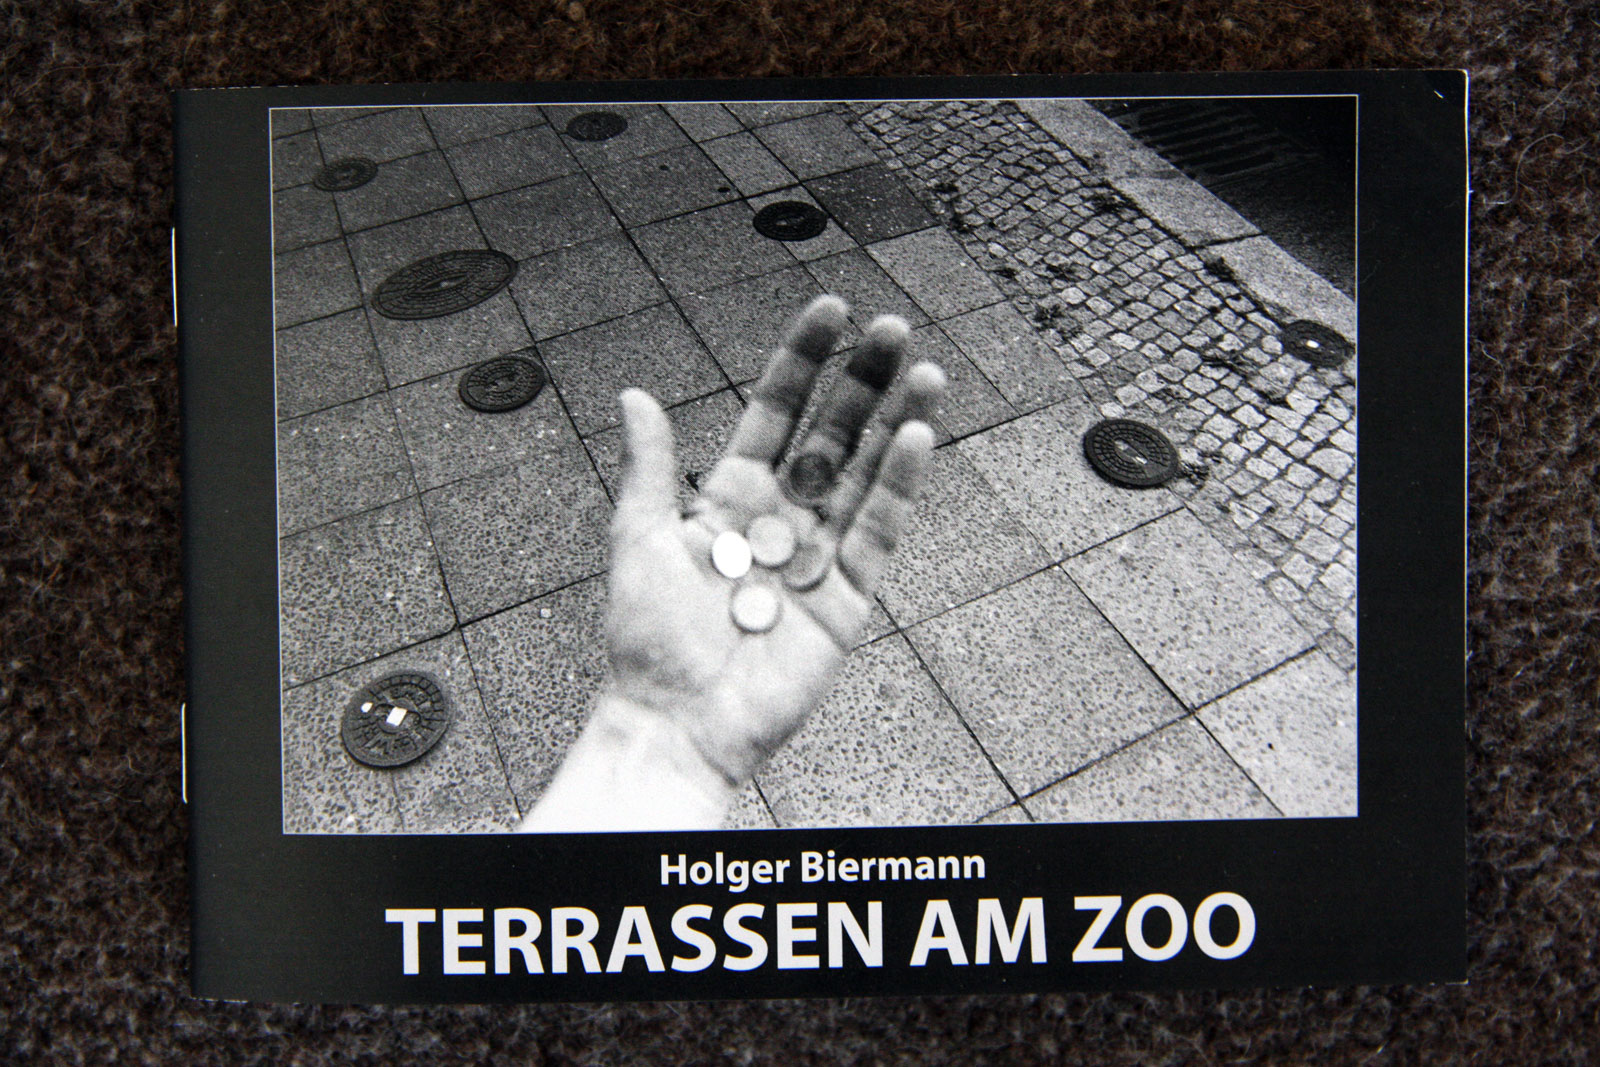 New Booklet : TERRASSEN AM ZOO by Holger Biermann